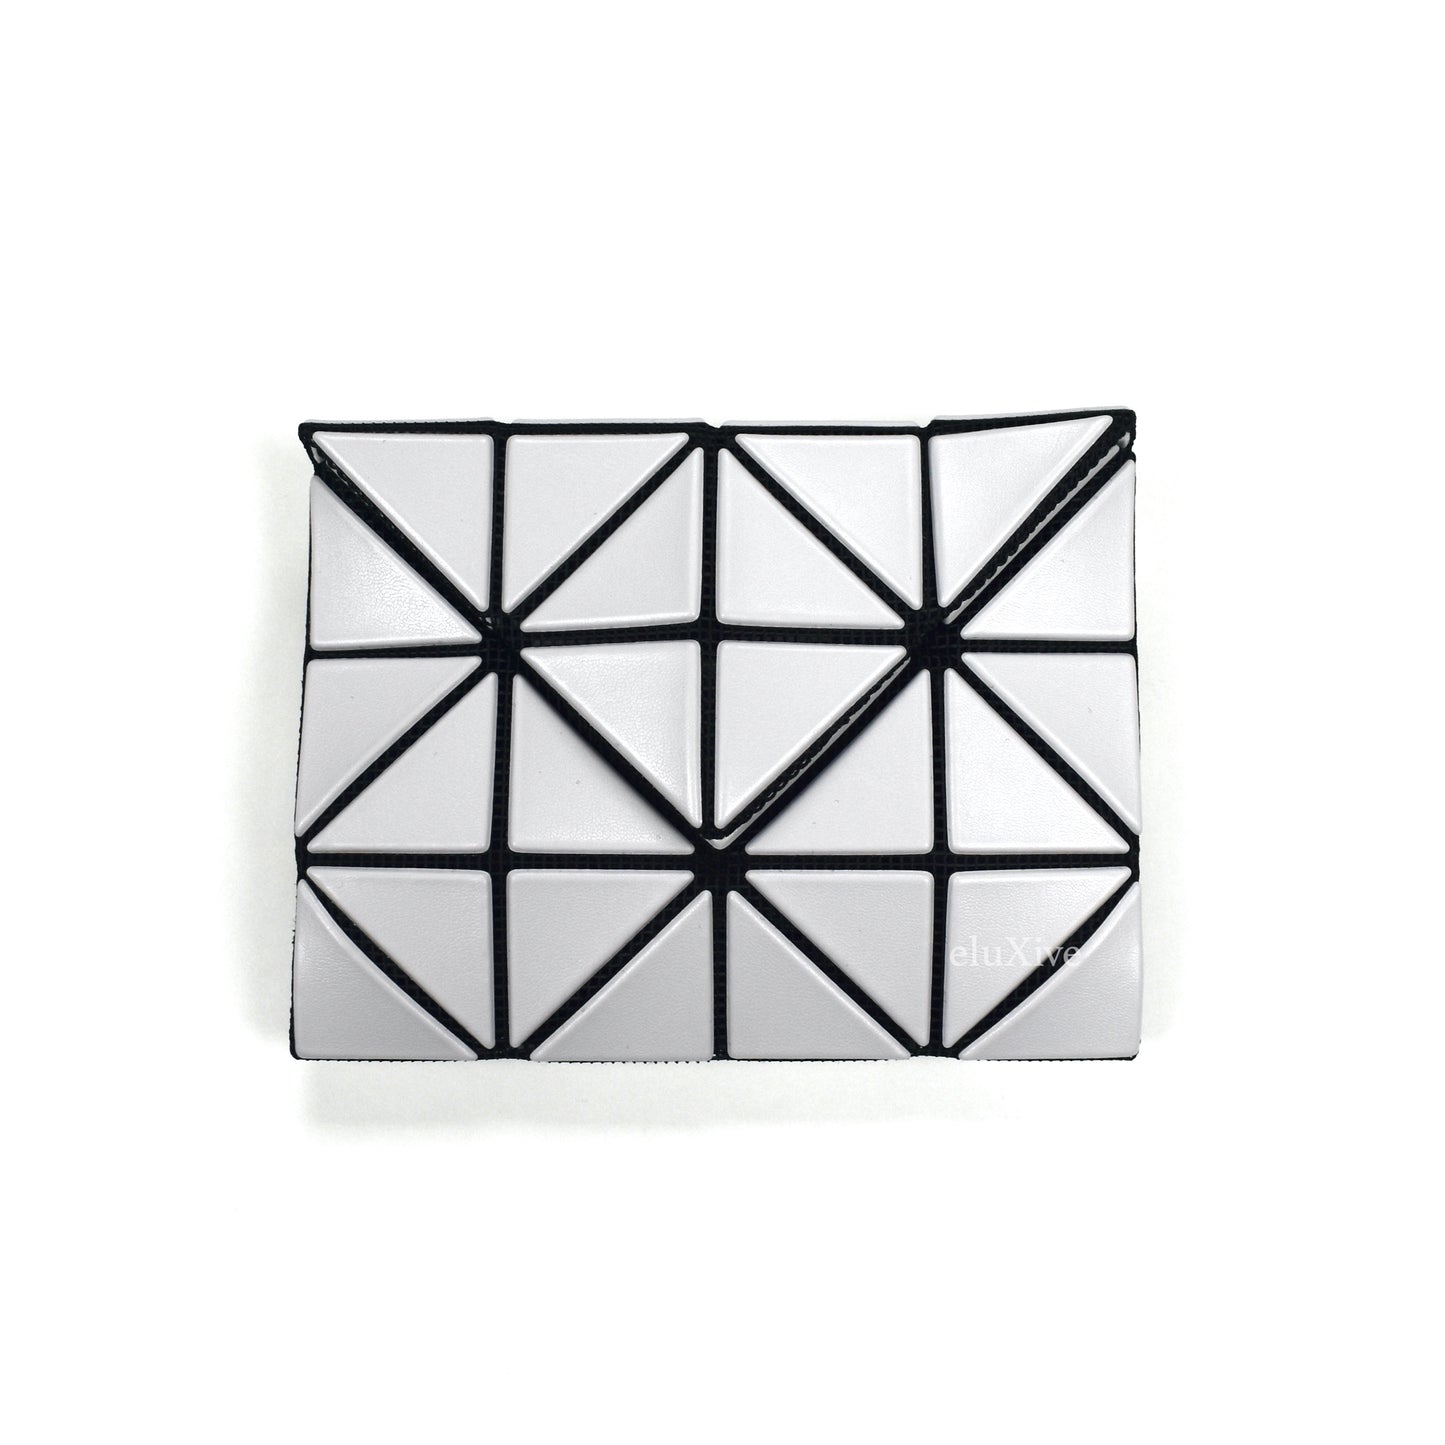 Baobao Issey Miyake - Matte Light Gray Geometric Envelope Wallet